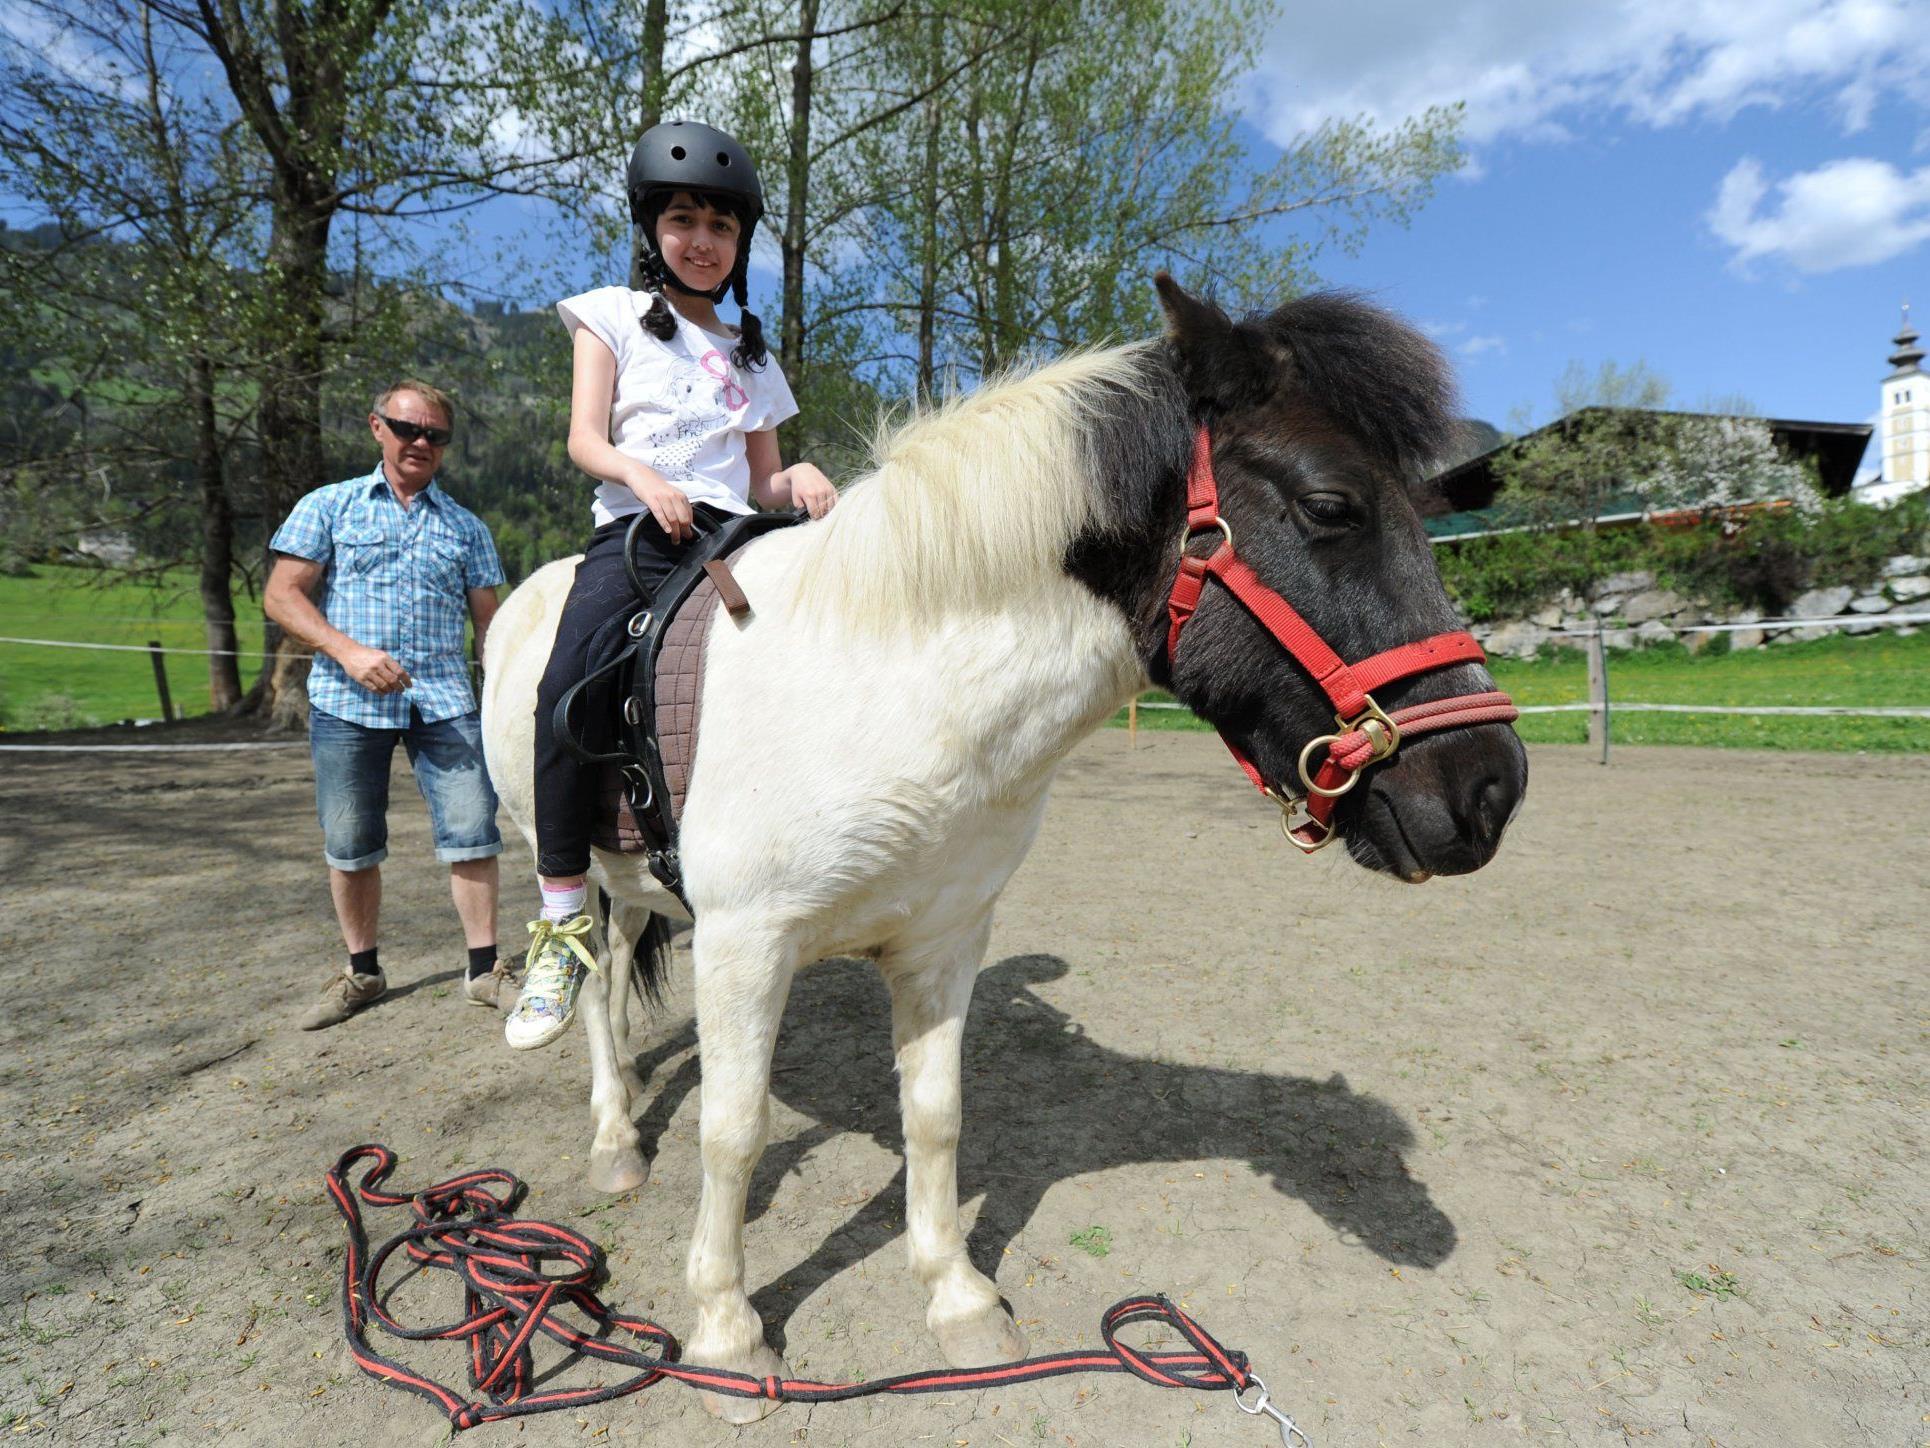 Die achtjährige Sabrina, die an Epilepsie und einer Entwicklungsstörung leidet, mit "Pferdeflüsterer" Heinz Aigner (l.) auf dem Therapiepferd "Kleiner Donner", am "Little Horseland for Kids" in St. Veit im Pongau.